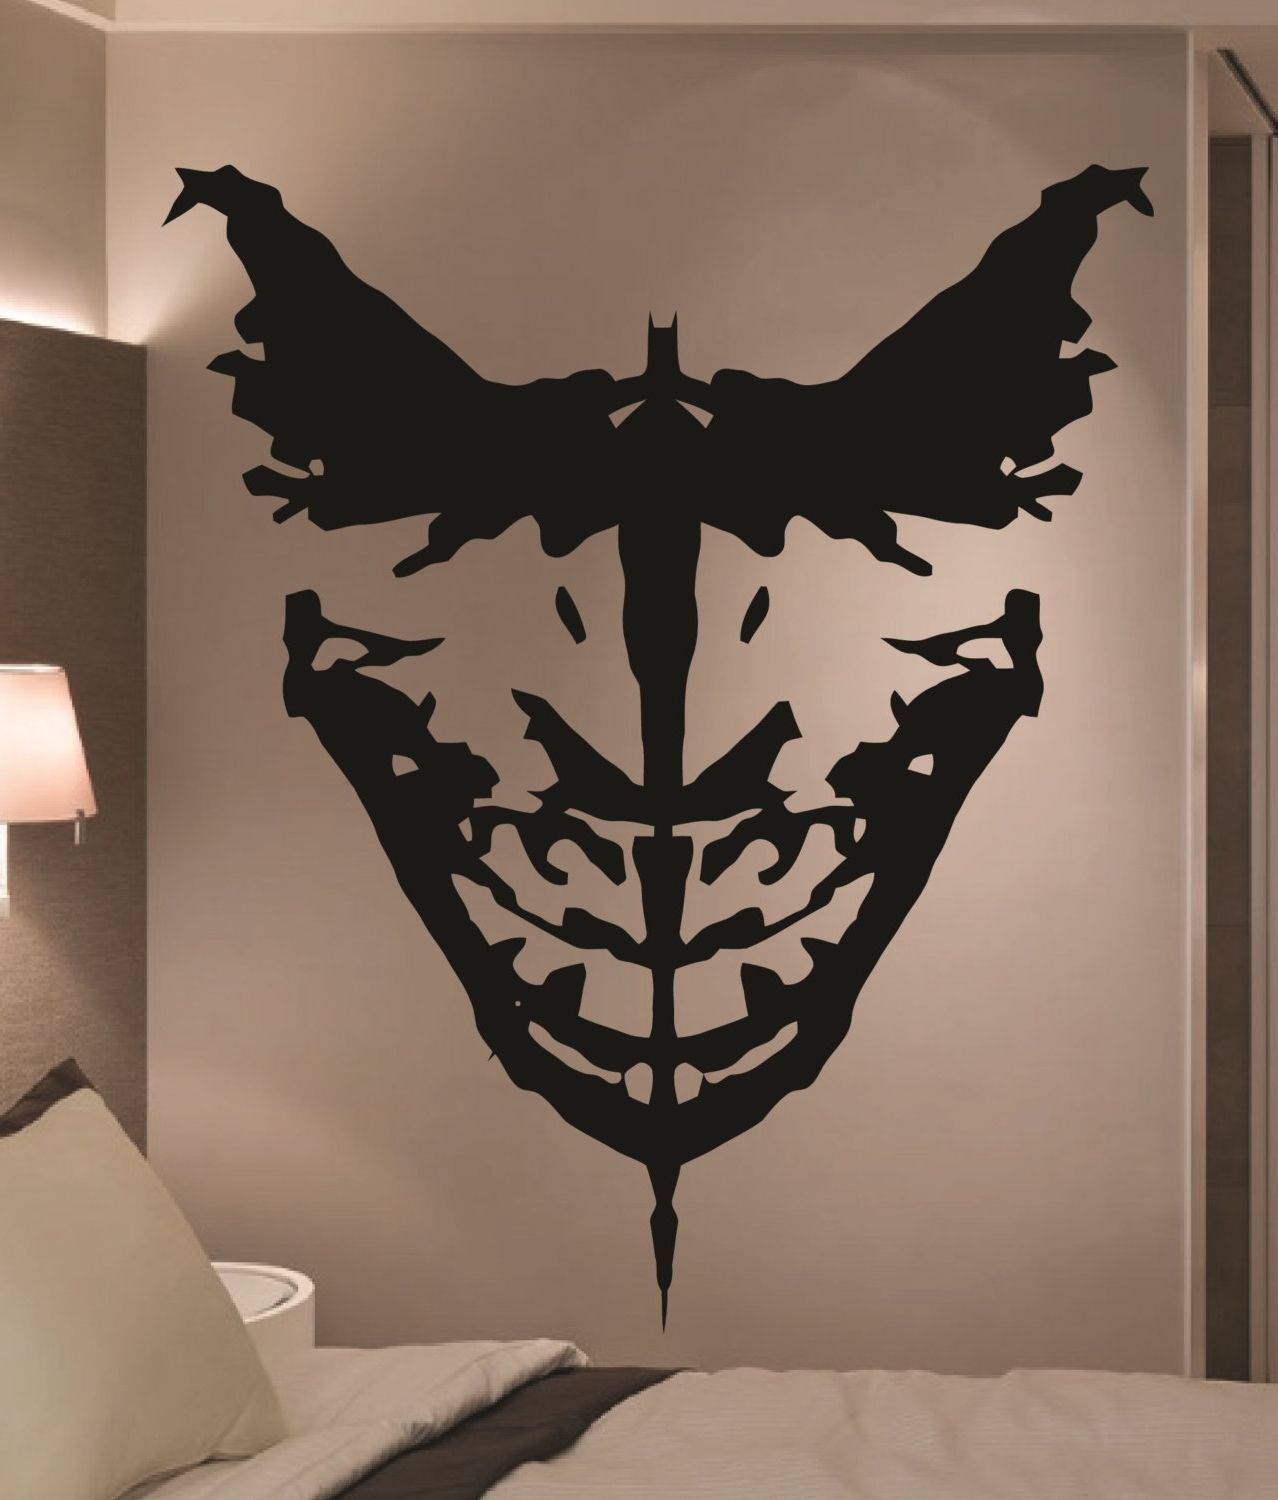 Preferred Joker Wall Art Throughout Joker Wall Art – Elitflat (View 11 of 15)